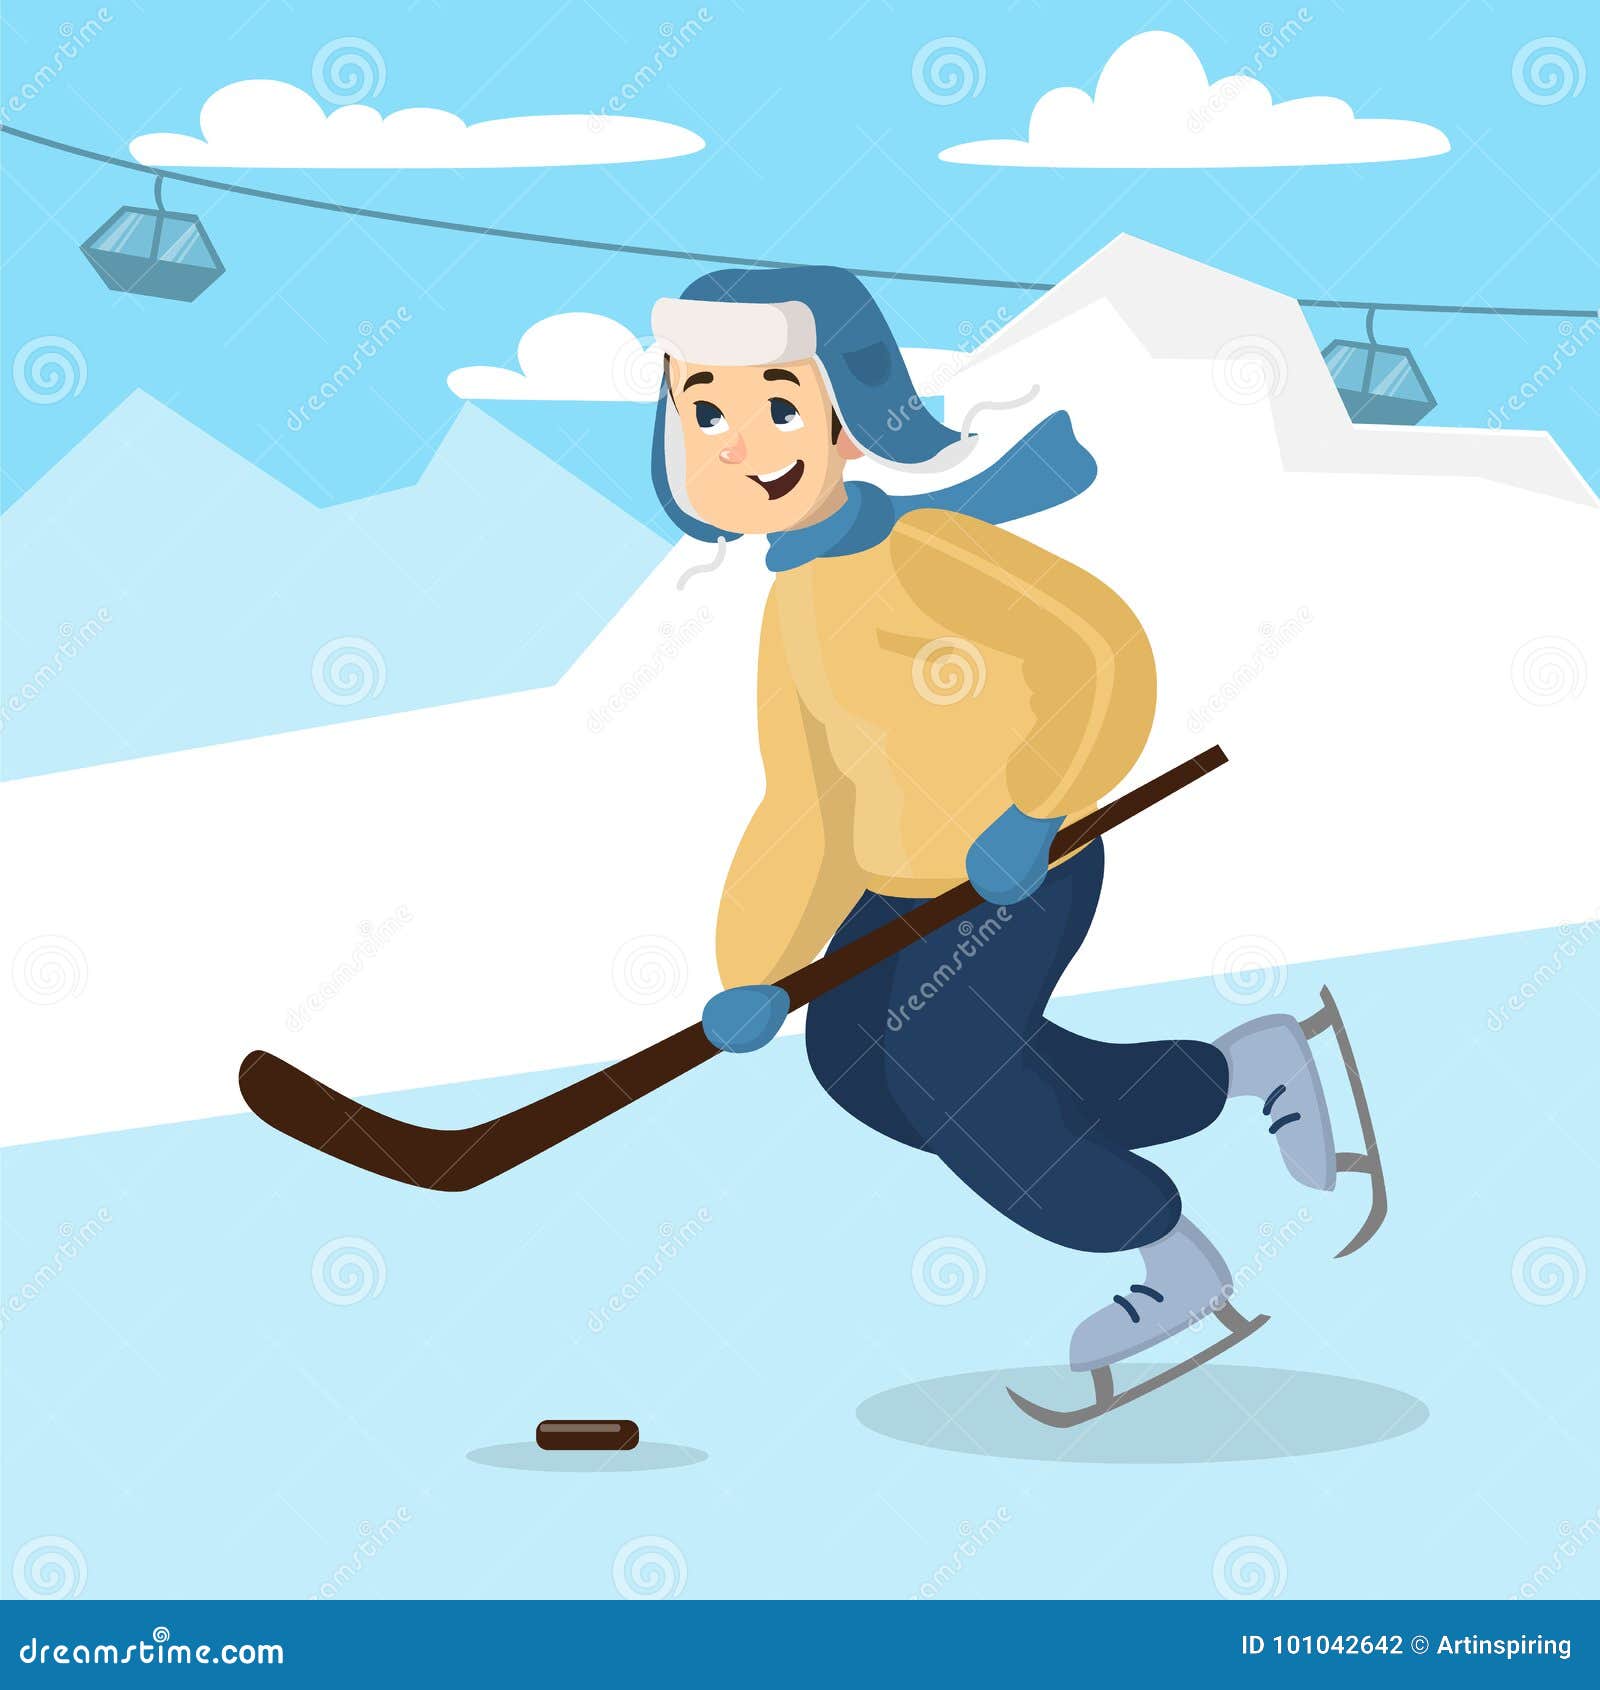 Я хоккейный папа песня. Мальчики играют в хоккей иллюстрация. Папа играет в хоккей. Папа и мальчик хоккеисты. Мальчик хоккеист картинка.